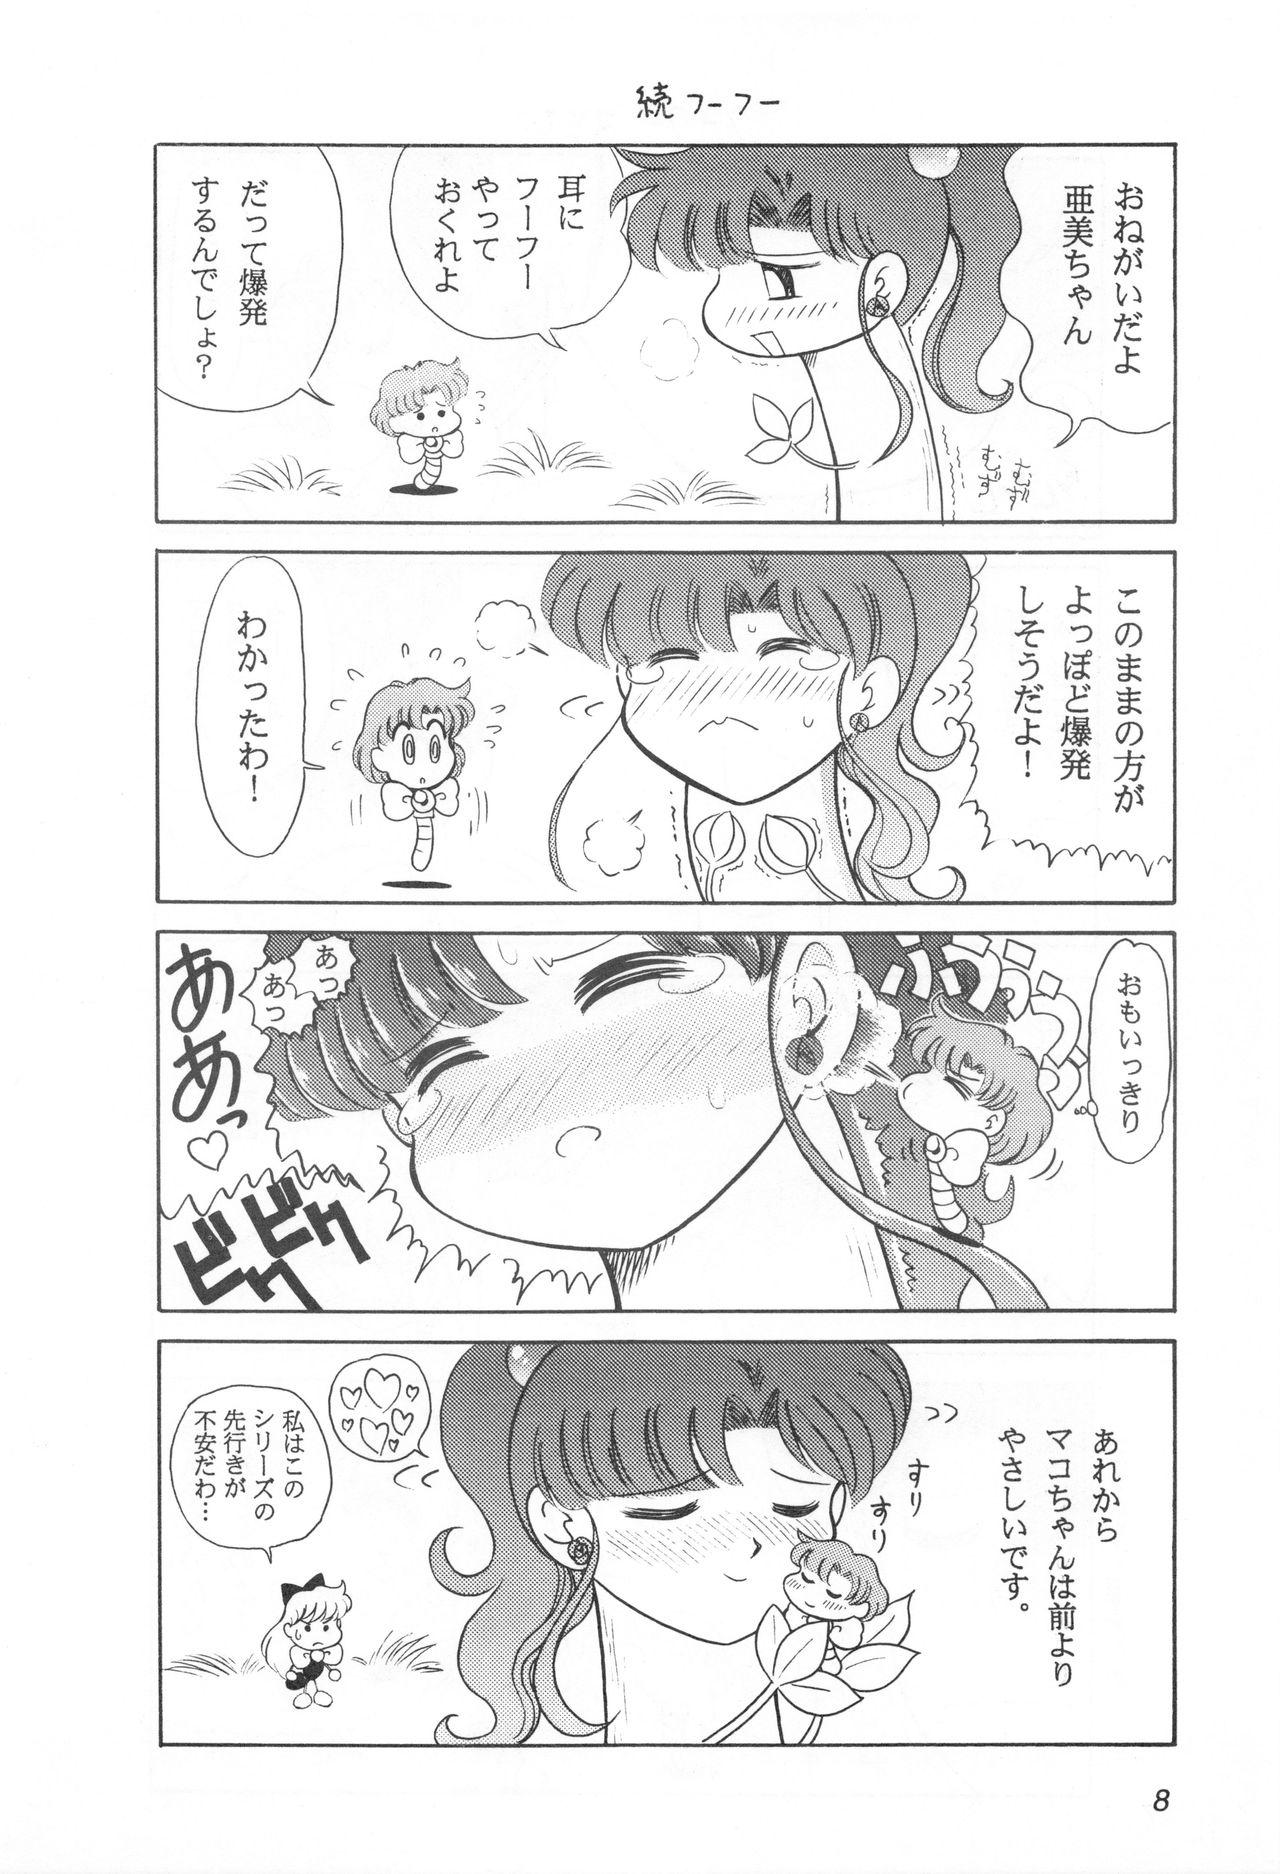 Ball Sucking Mimizu no Ami-chan Vol. 2 - Sailor moon For - Page 7